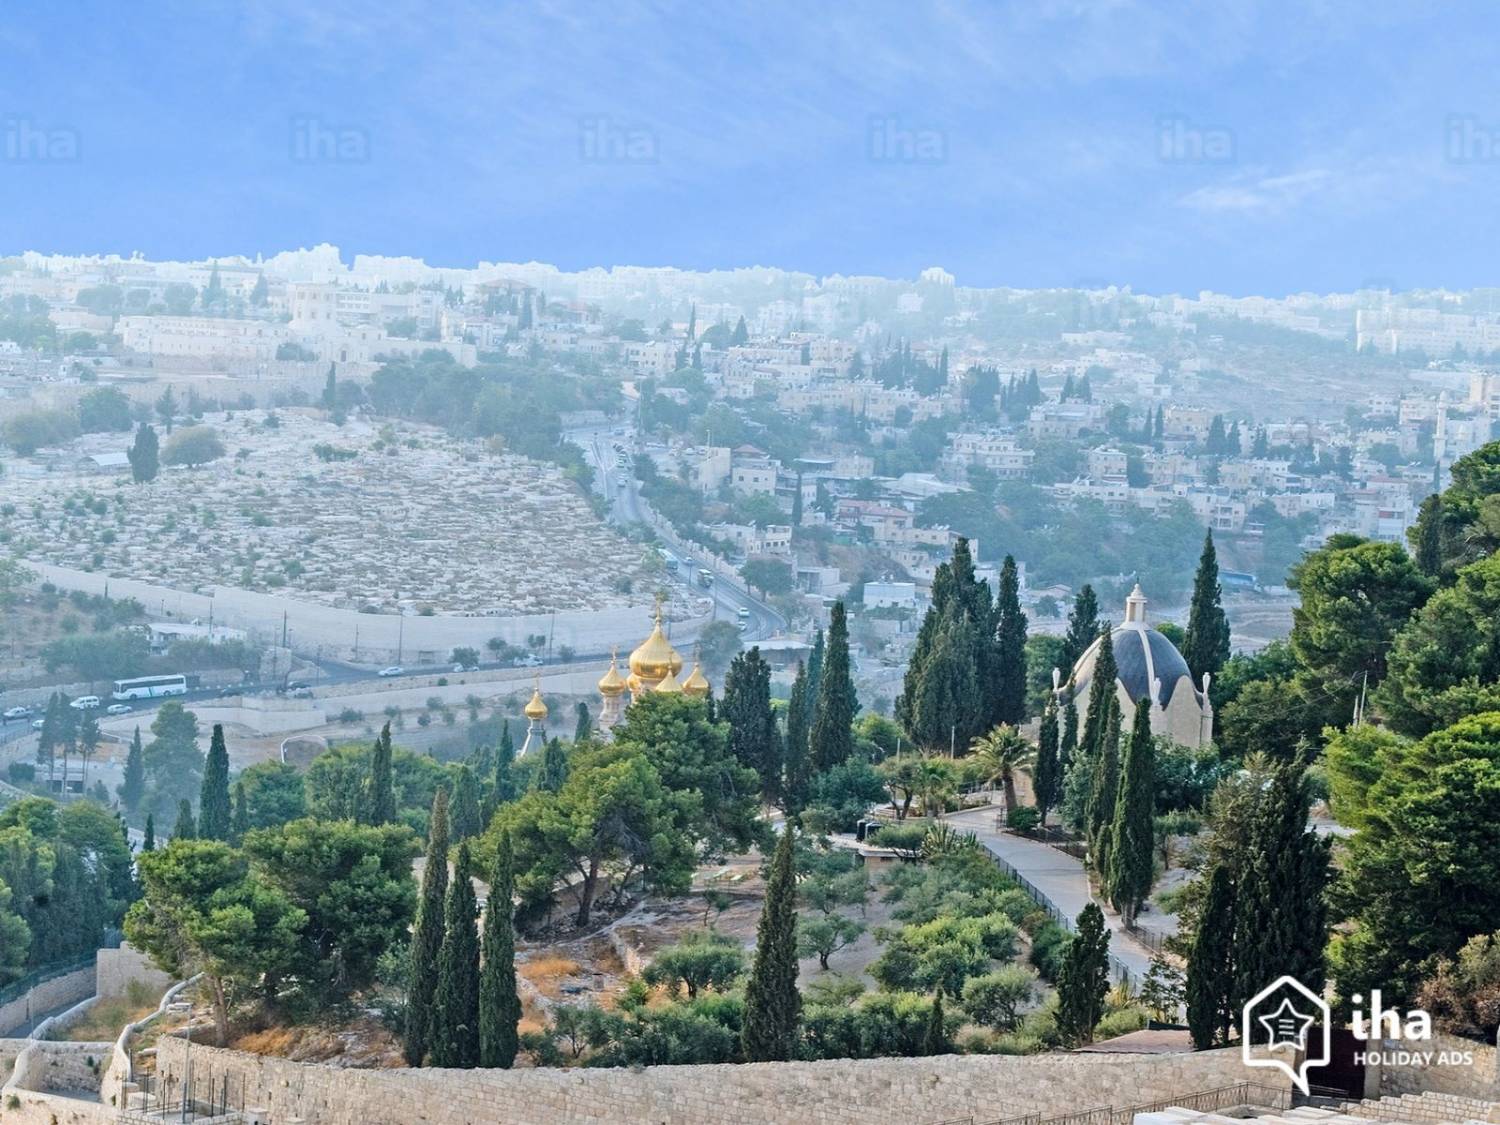 Земля обетованная. Иерусалим